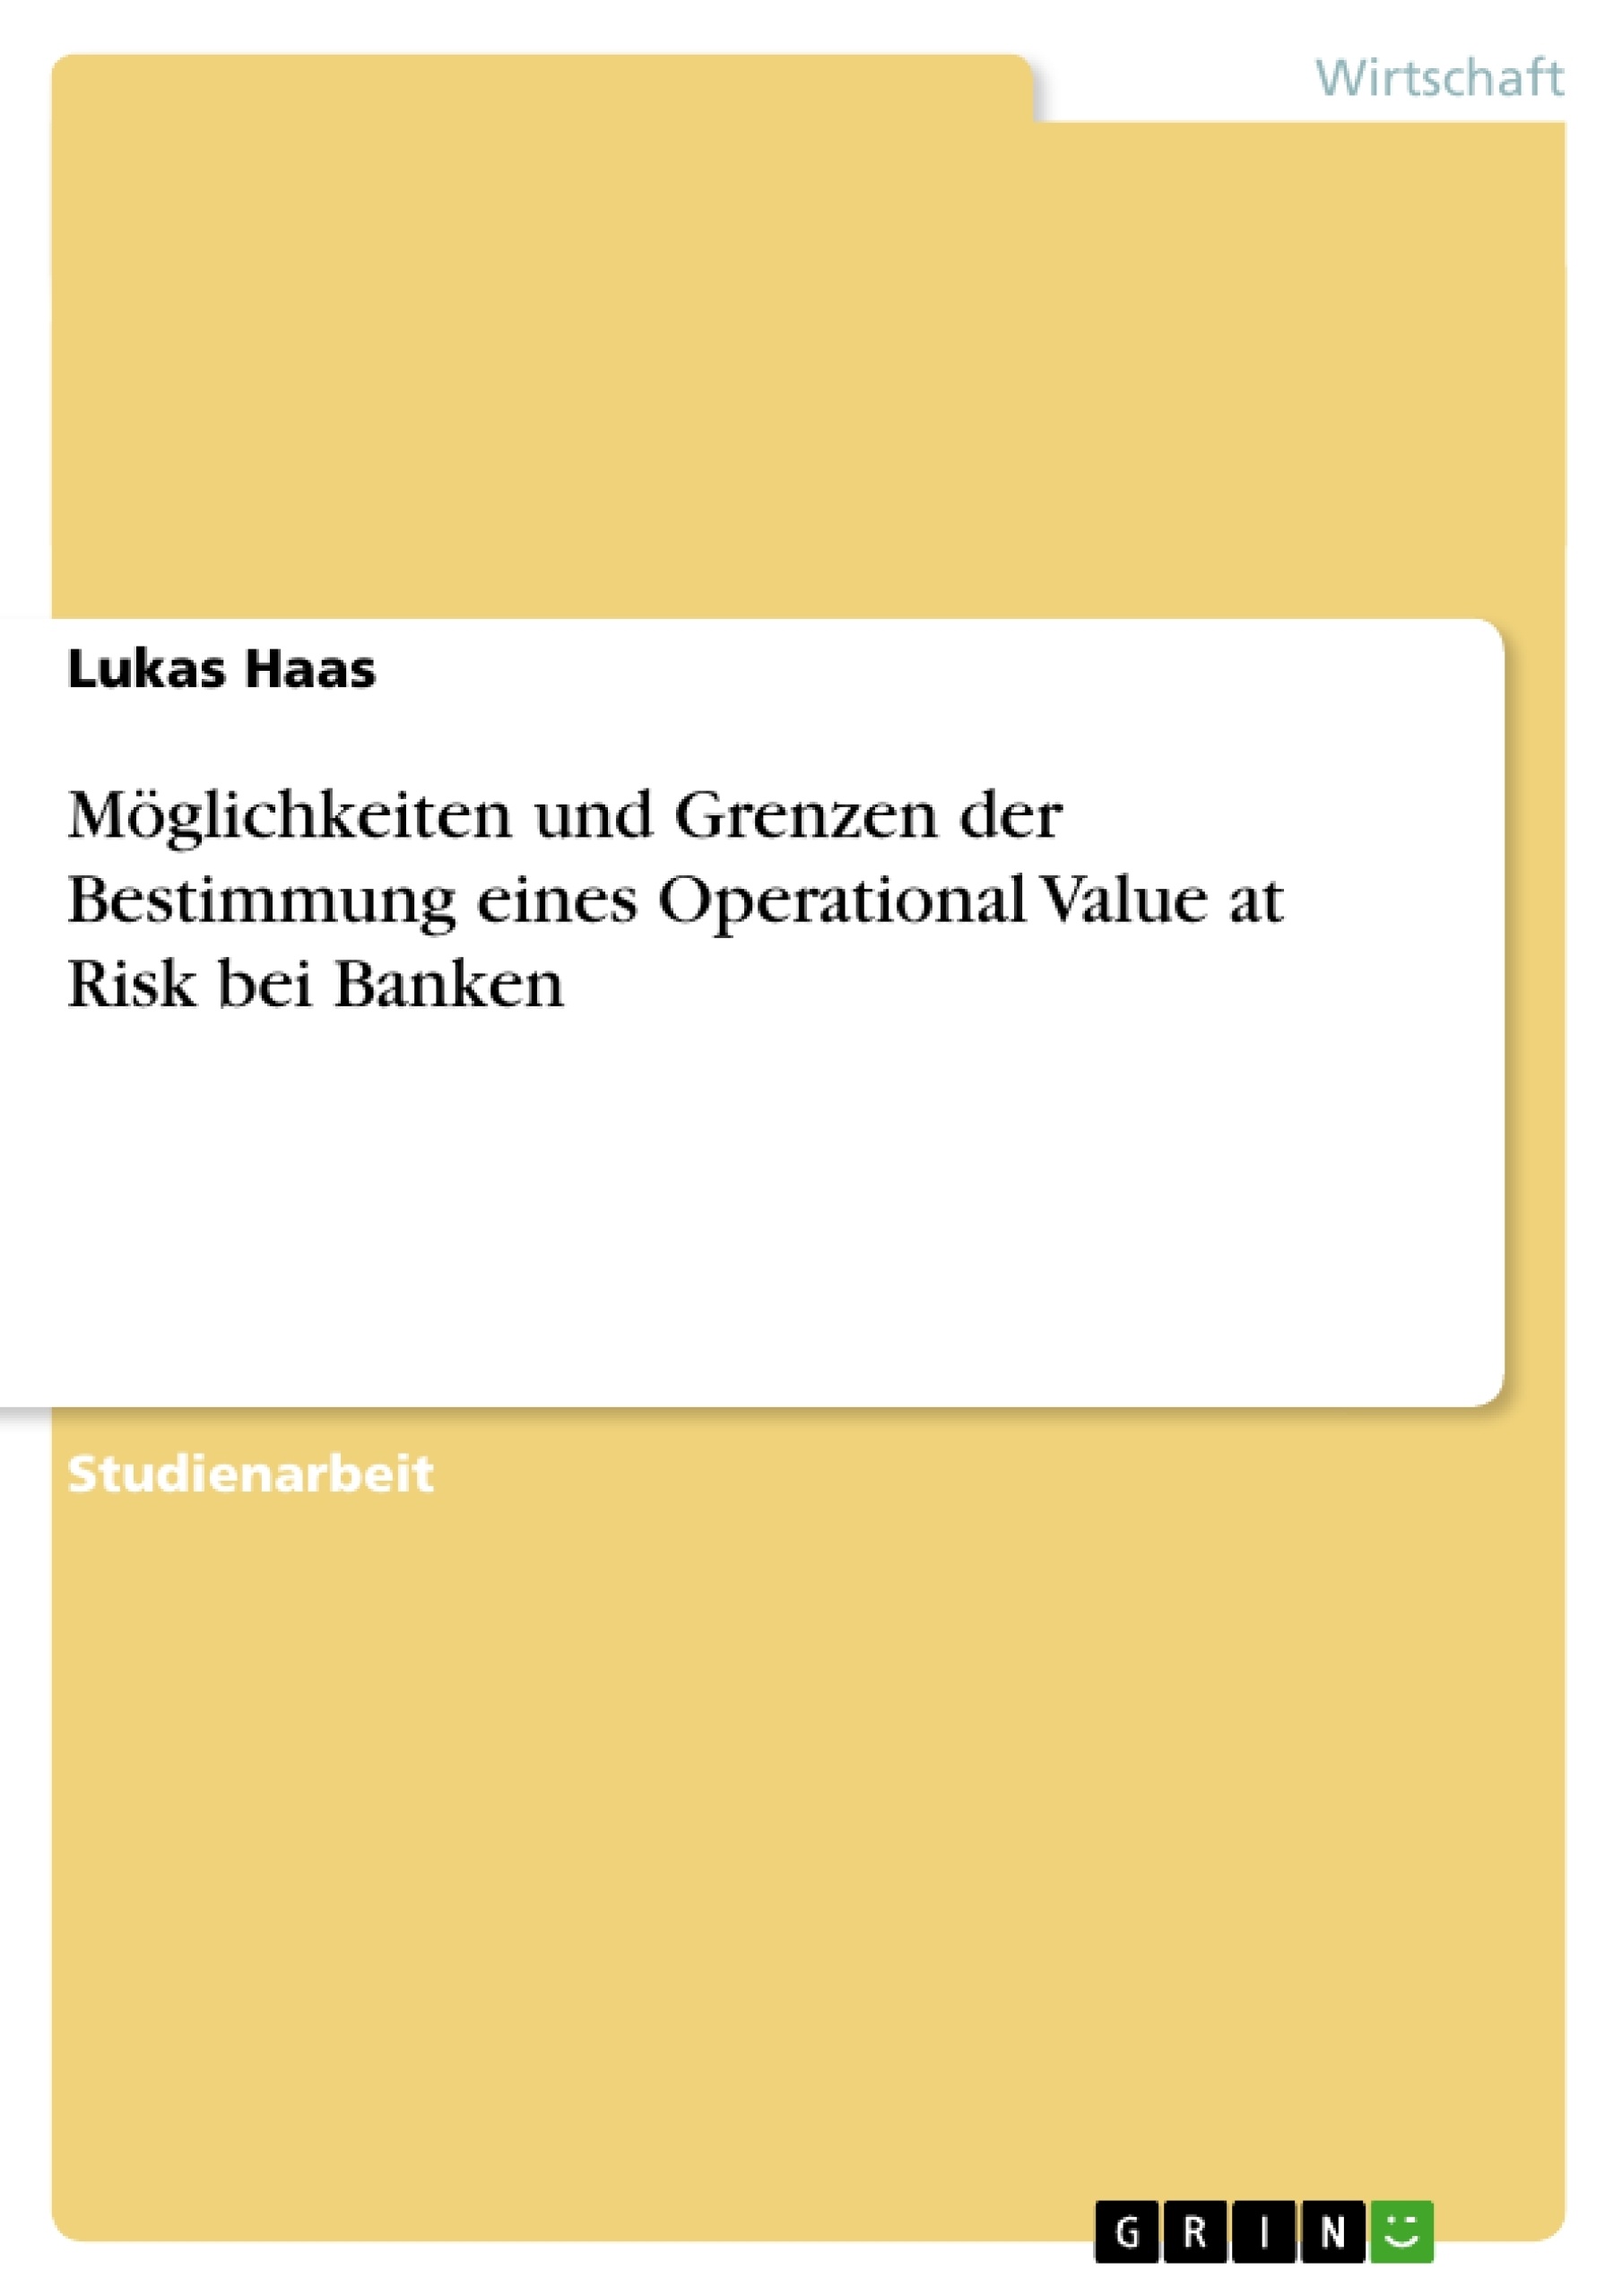 Título: Möglichkeiten und Grenzen der Bestimmung eines Operational Value at Risk bei Banken